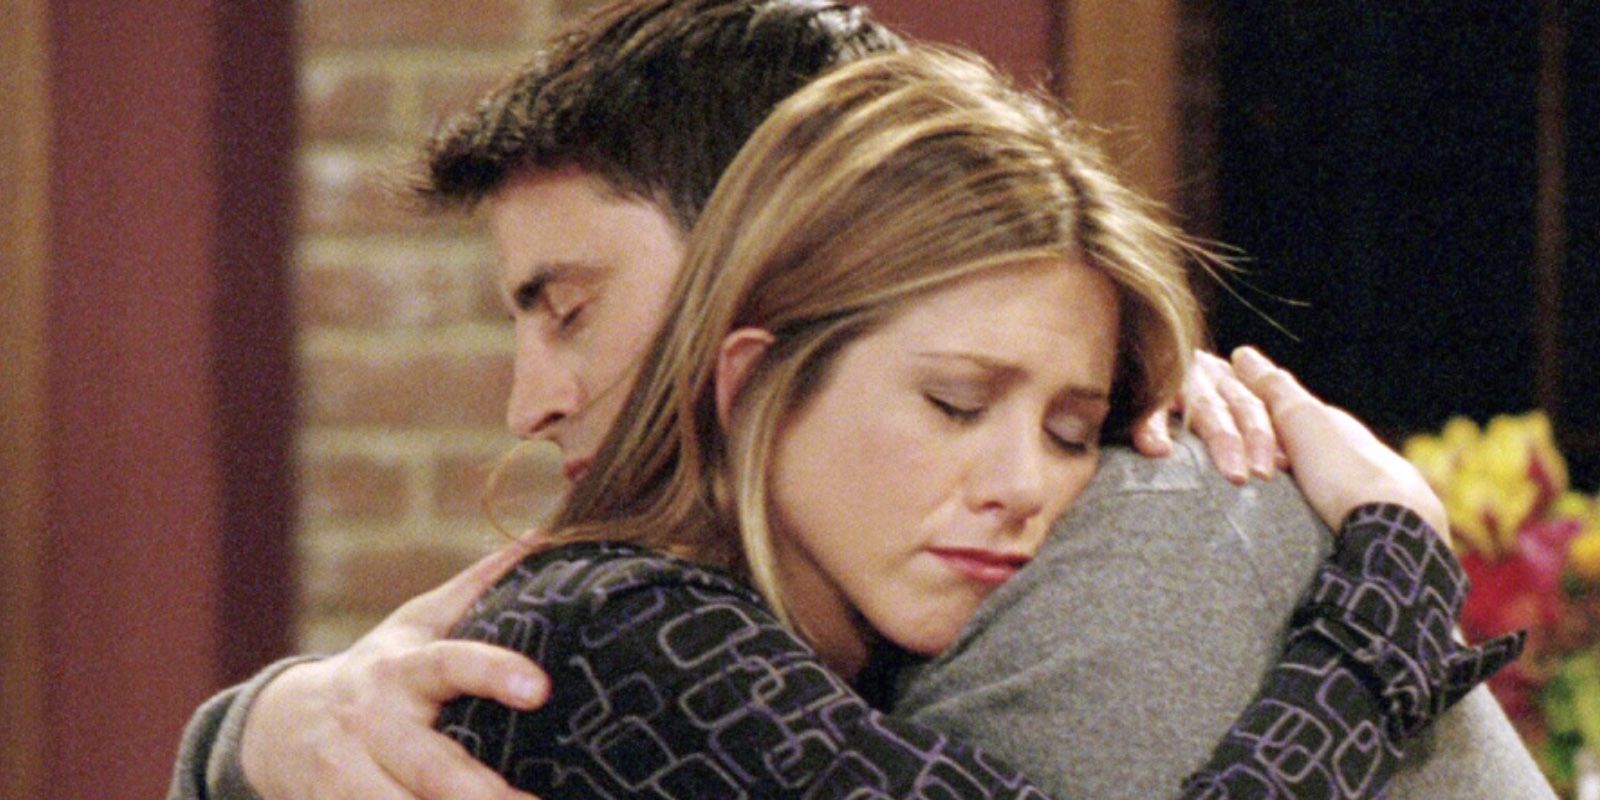 Joey tells Rachel he has feelings for her in Friends